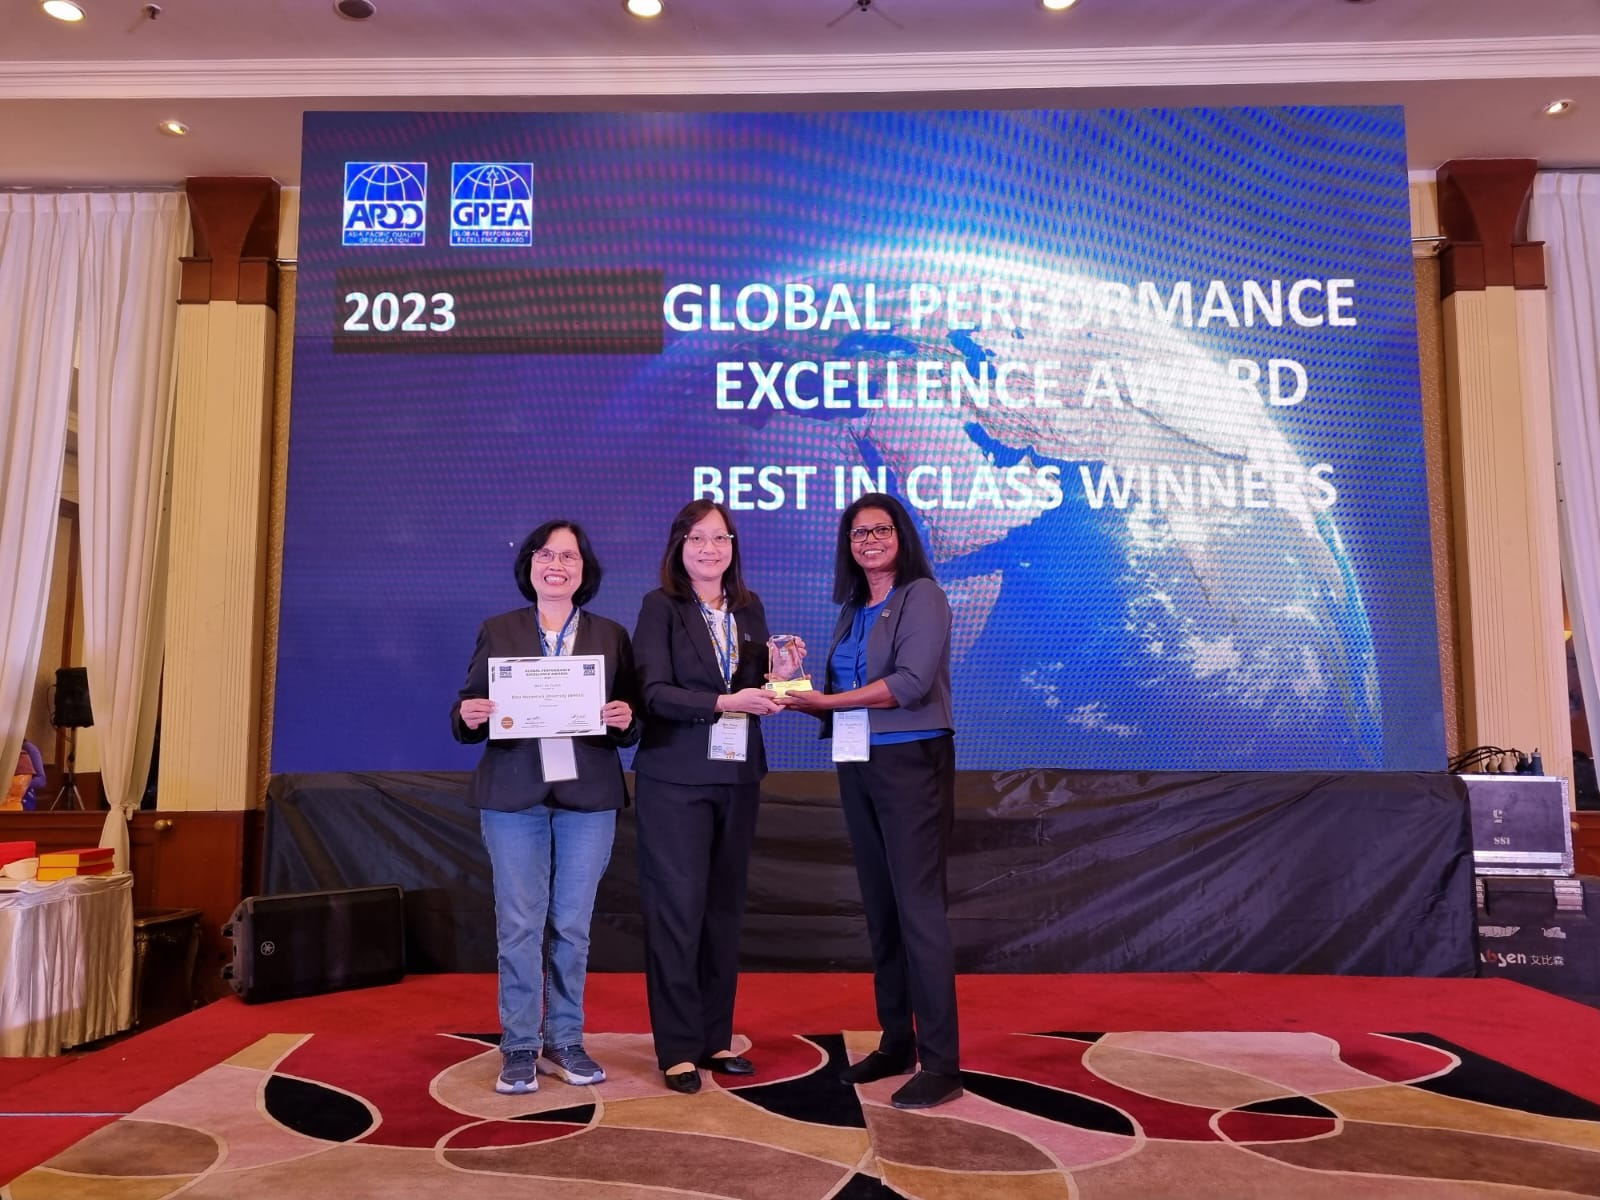 BINUS University Meraih Penghargaan Global Perfornance Excellence Award 2023